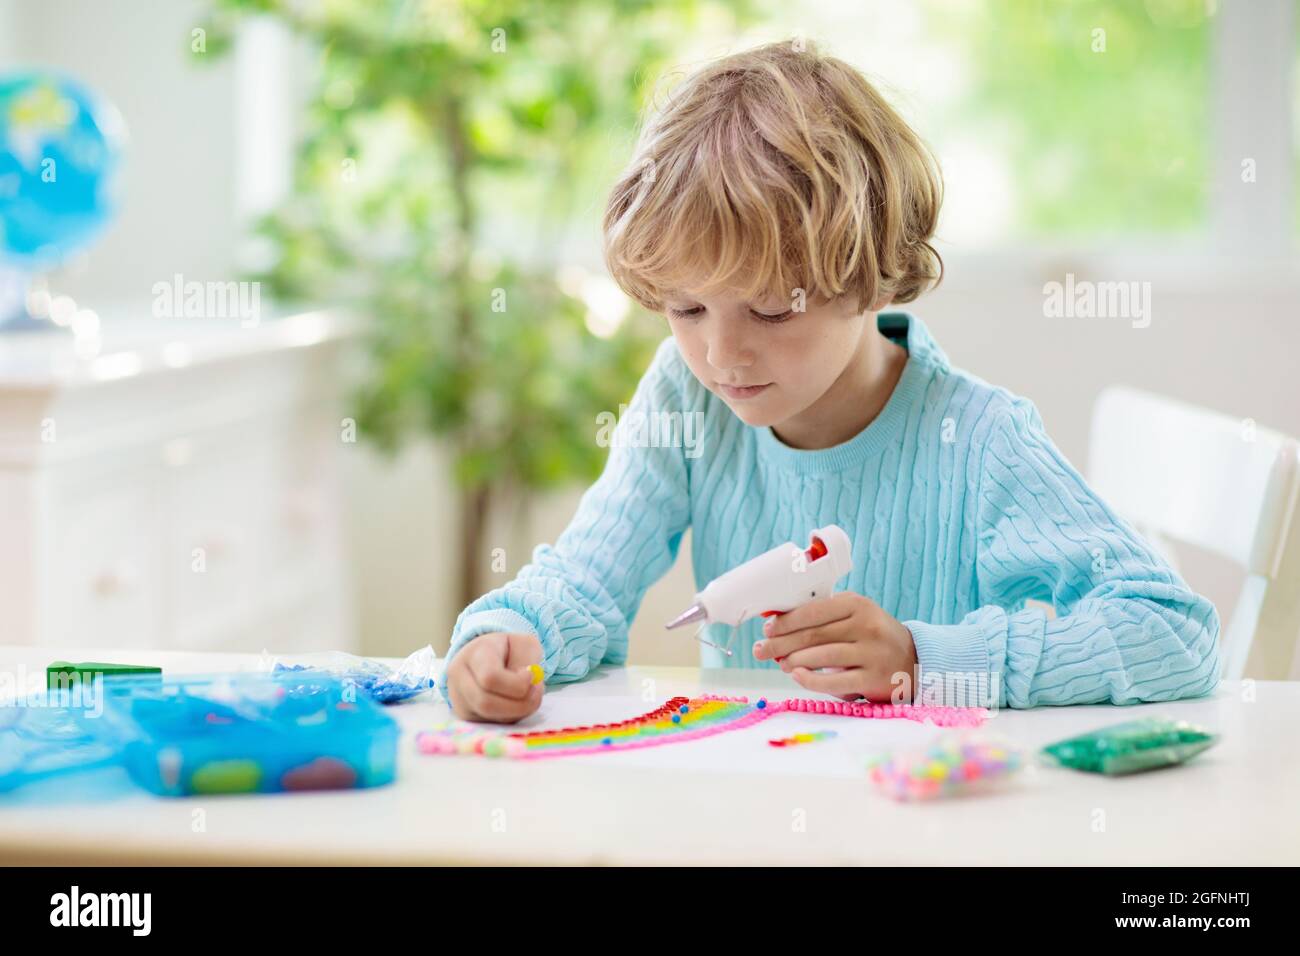 Basteln für Kinder. Kind mit Heißklebepistole. Kreativer kleiner Junge, der Knöpfe und Perlen im Regenbogen-Design klebt. Kunst und Kreativität Klasse in der Schule Stockfoto